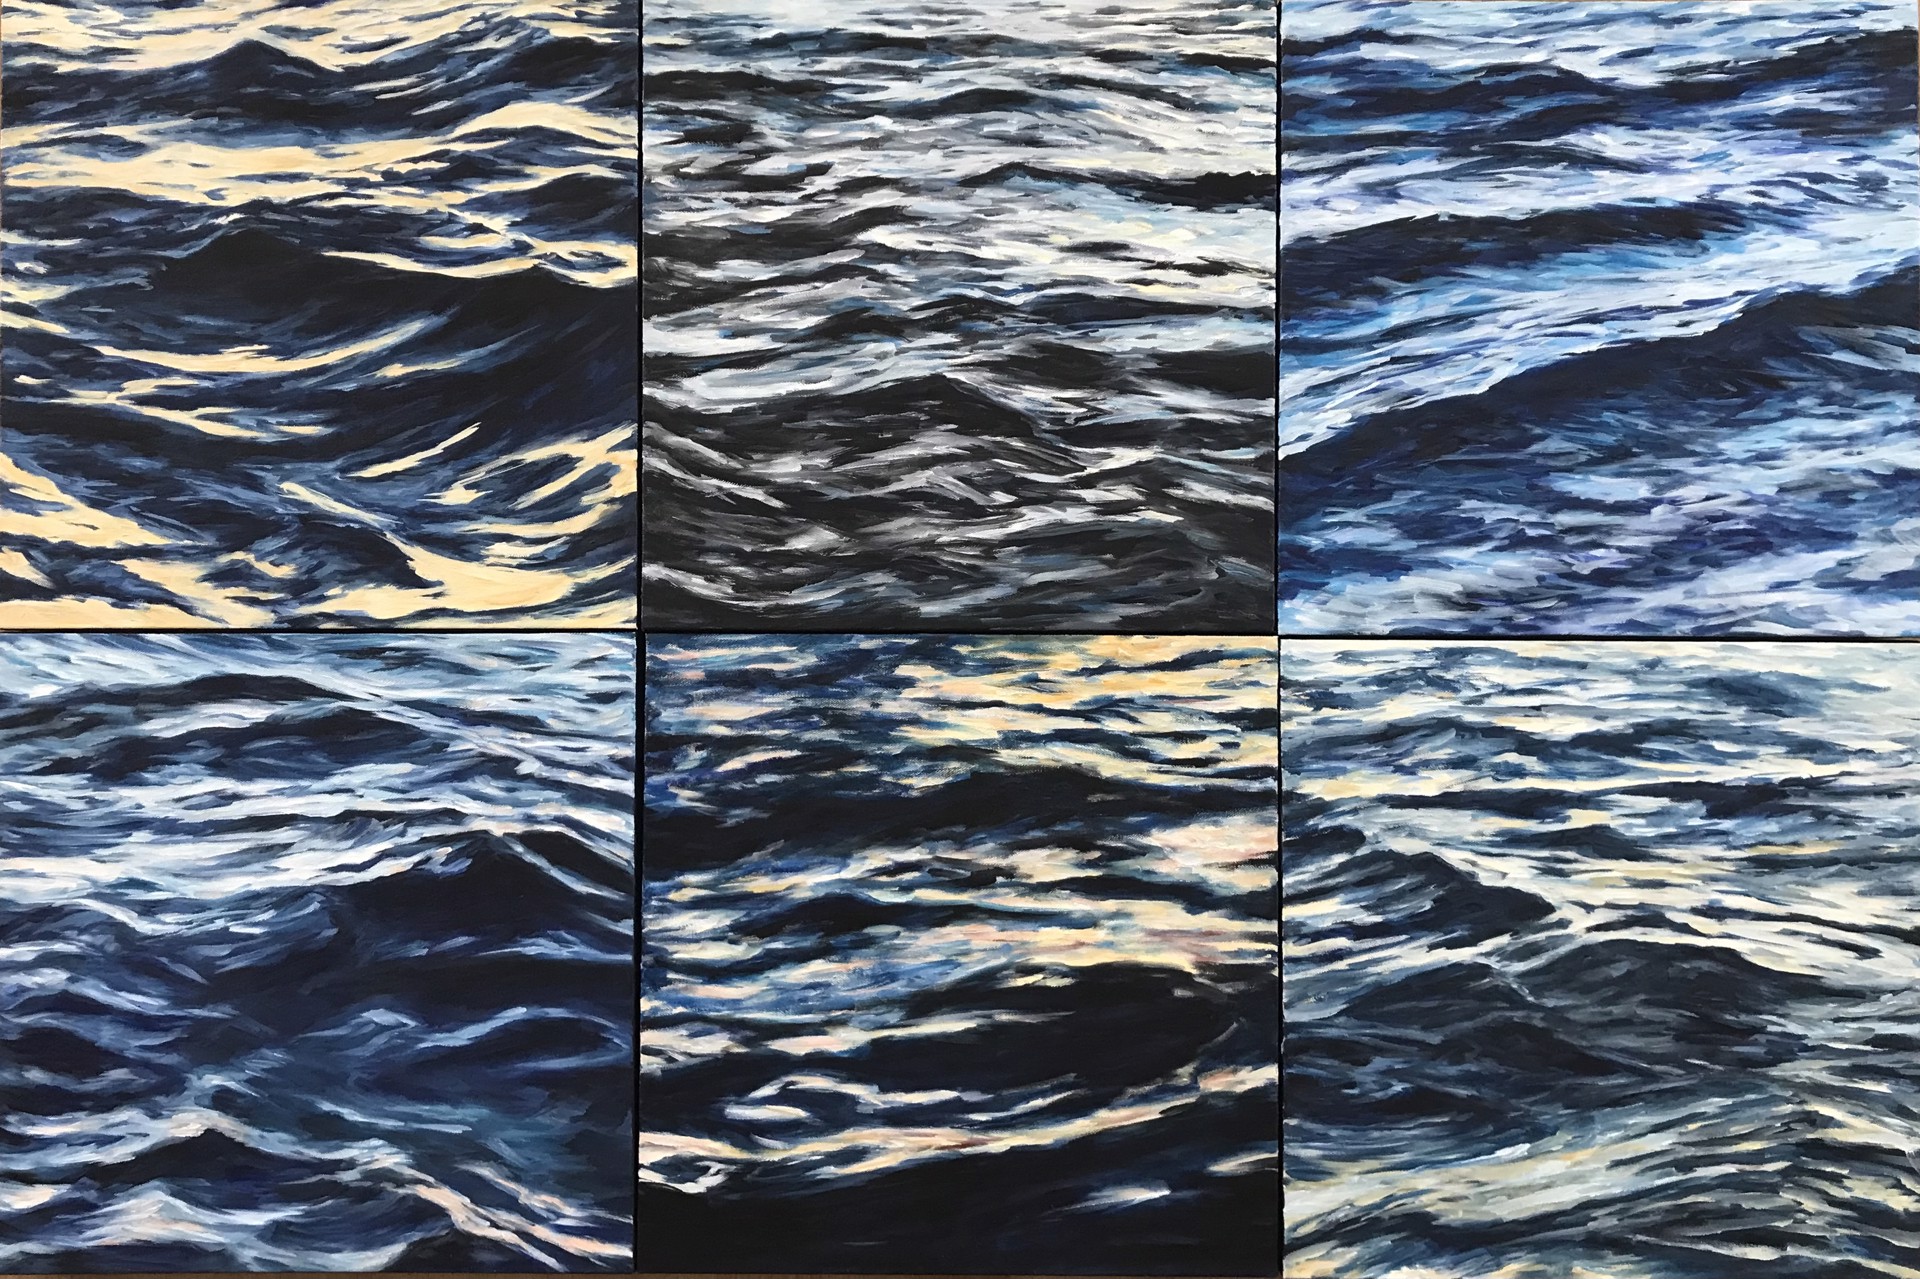 Lahaina Waves 11 by Valerie Eickmeier